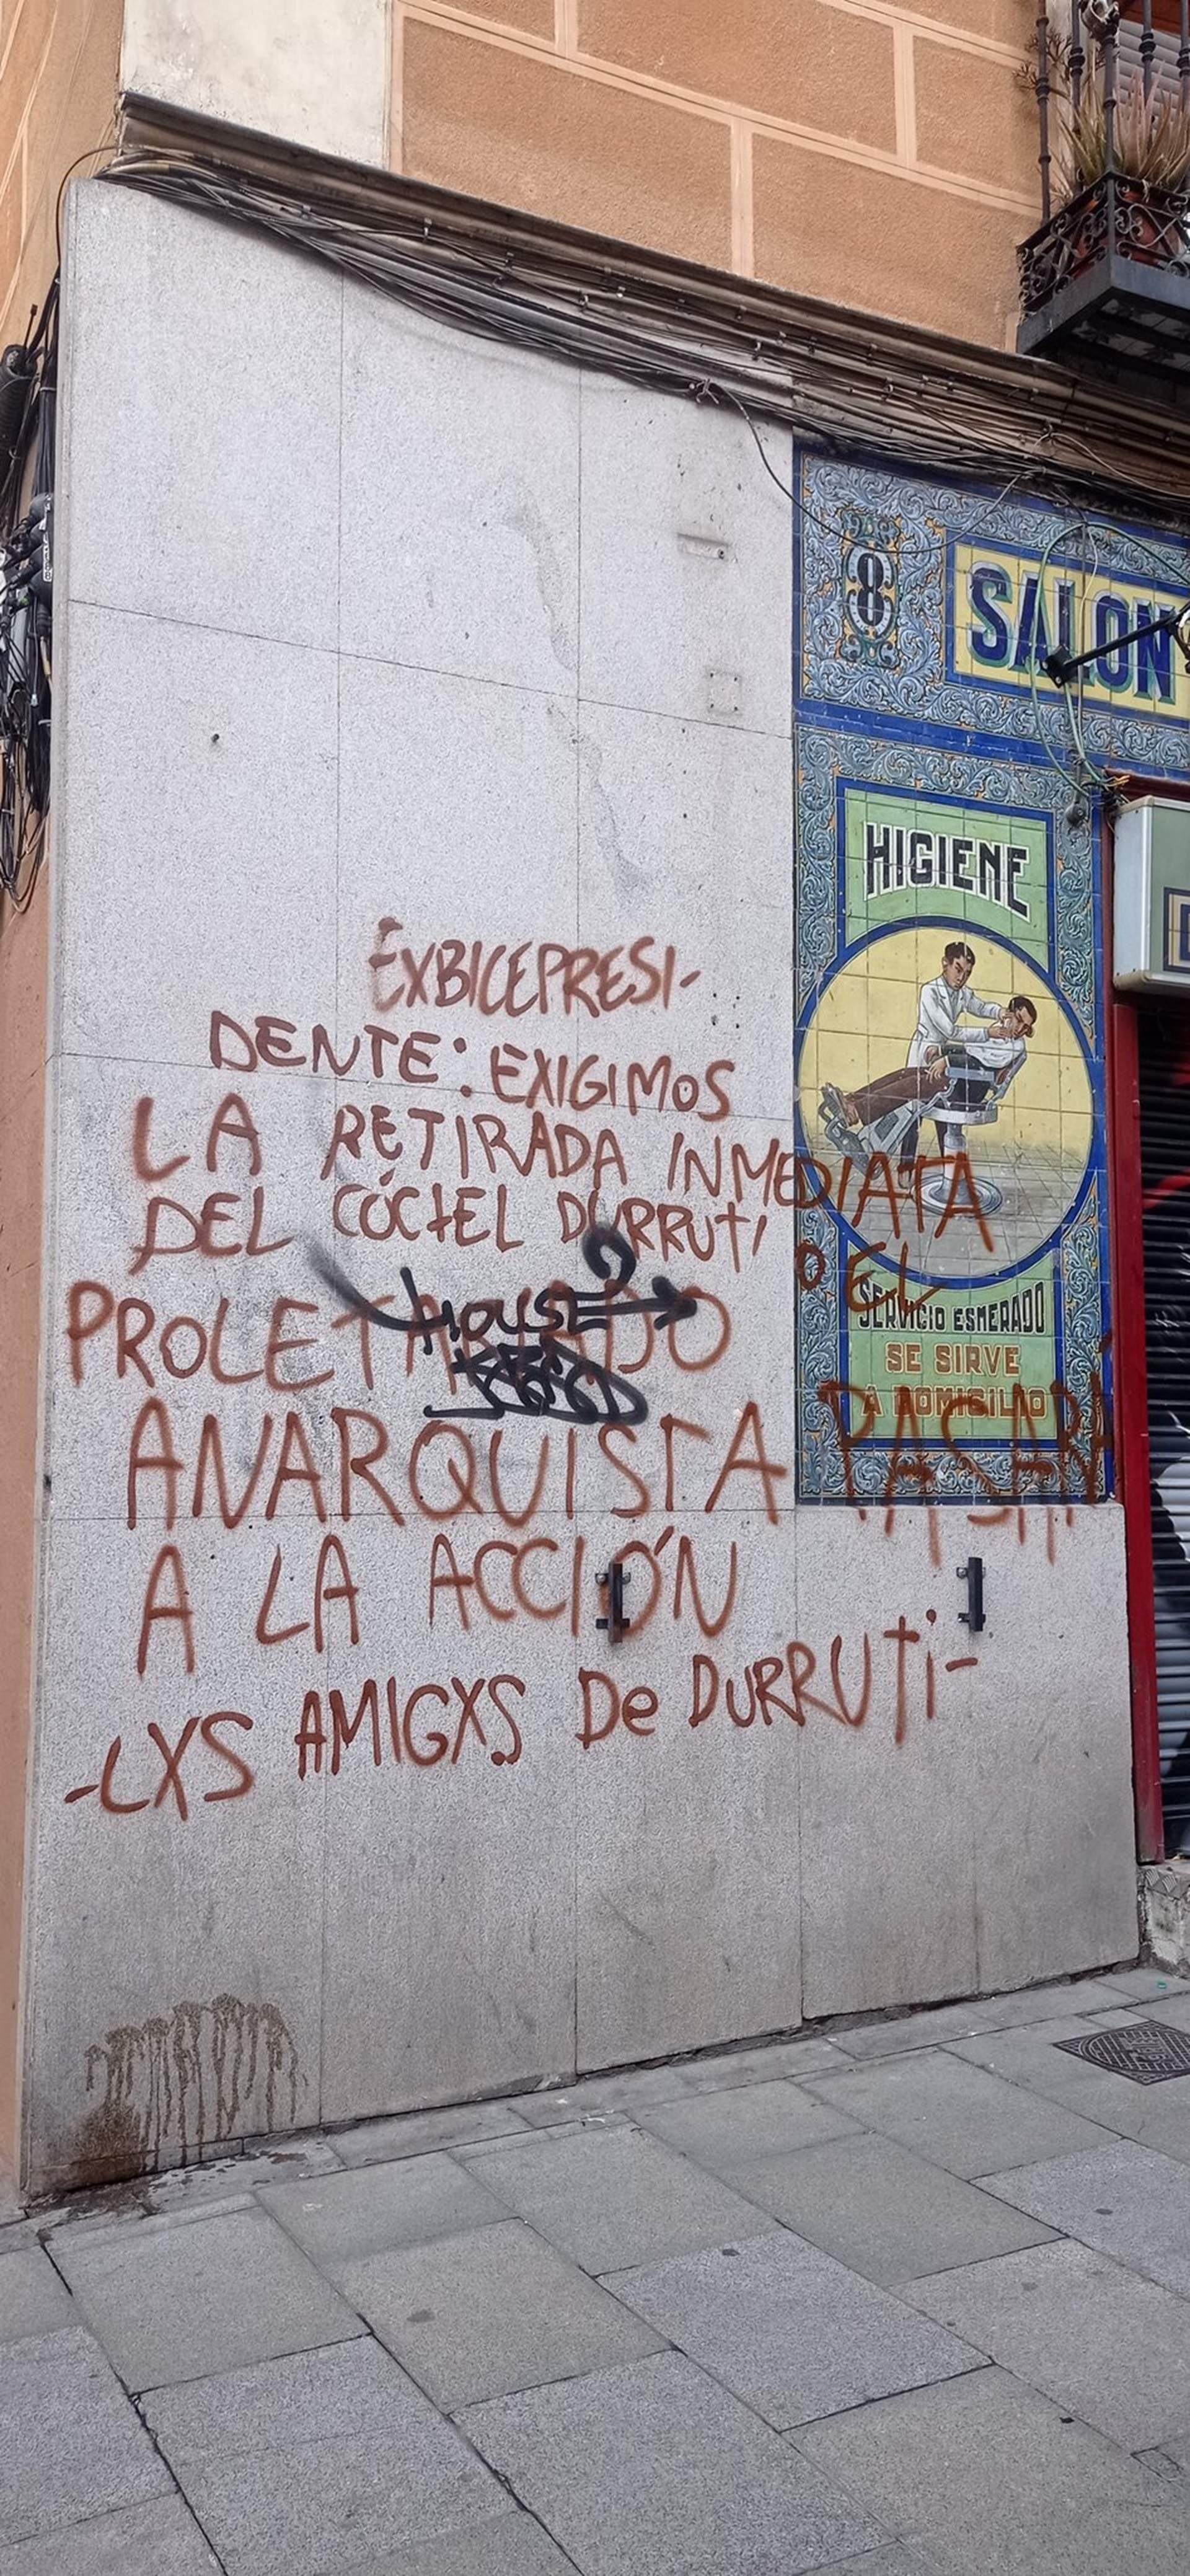 El bar de Pablo Iglesias a Lavapiés, amenaçat el dia abans de l'obertura: "Retirada del còctel de Durruti"